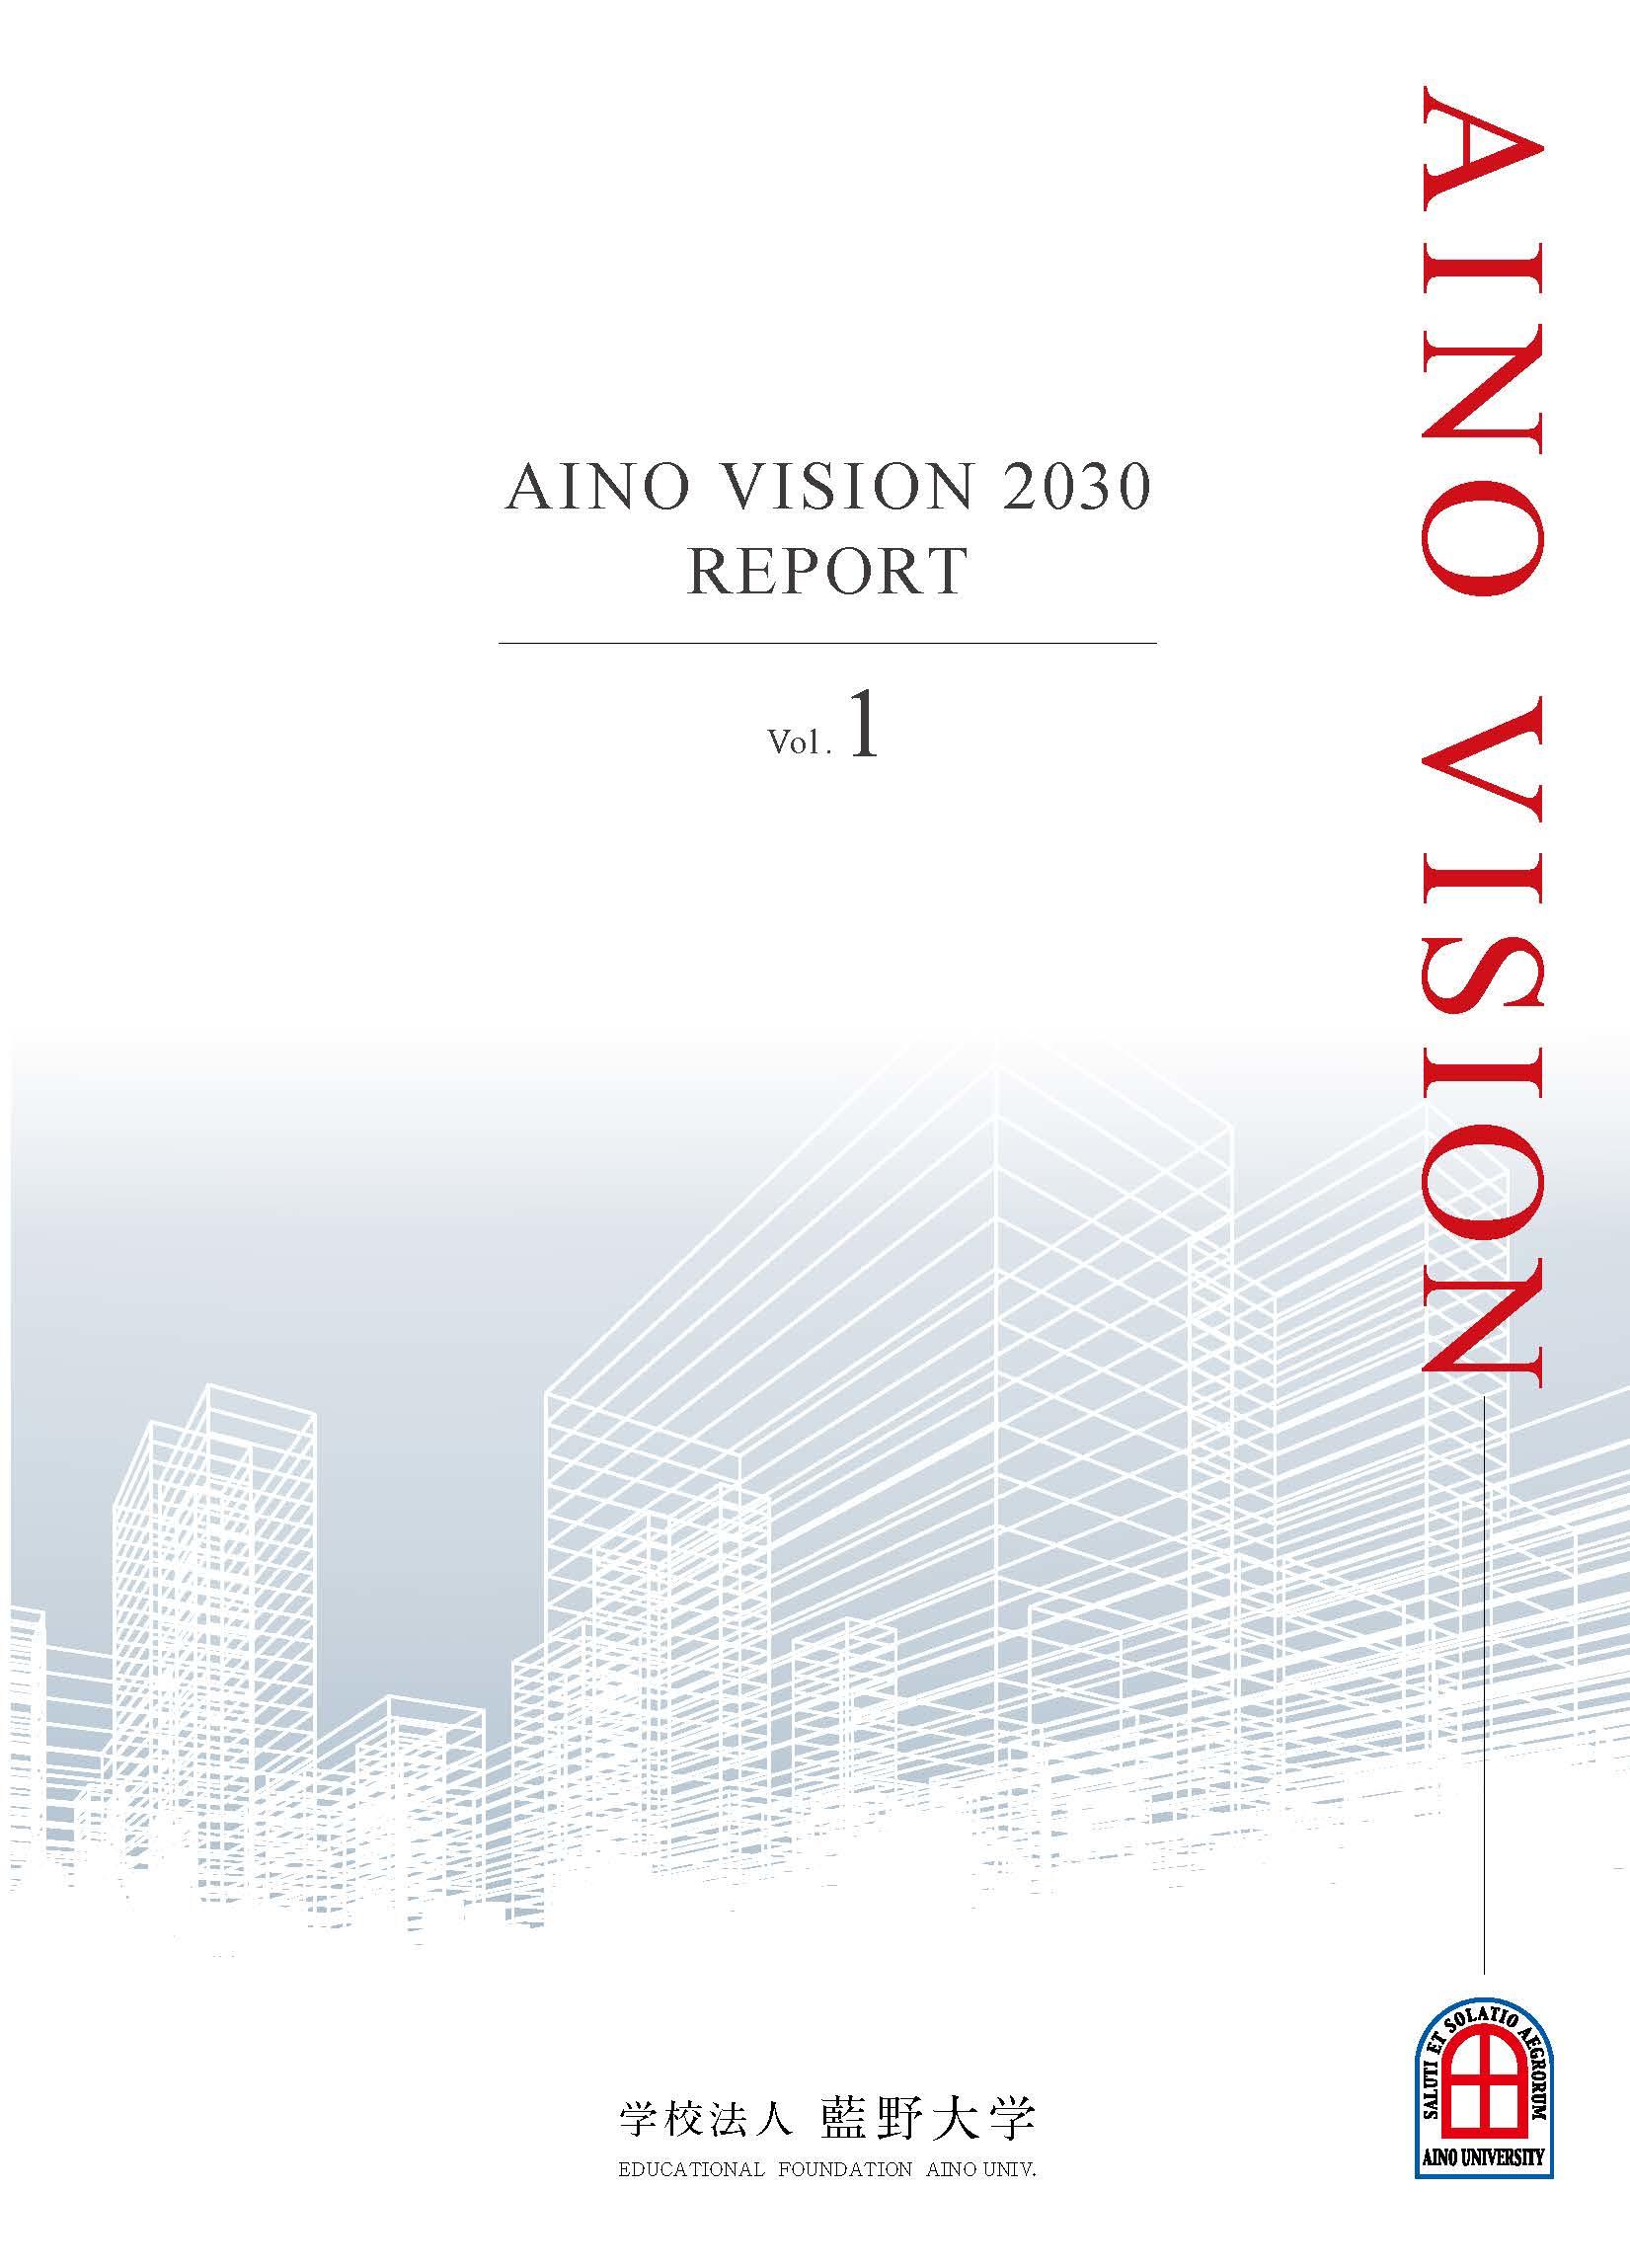 「AINO VISION 2030 REPORT」の発行・公表について